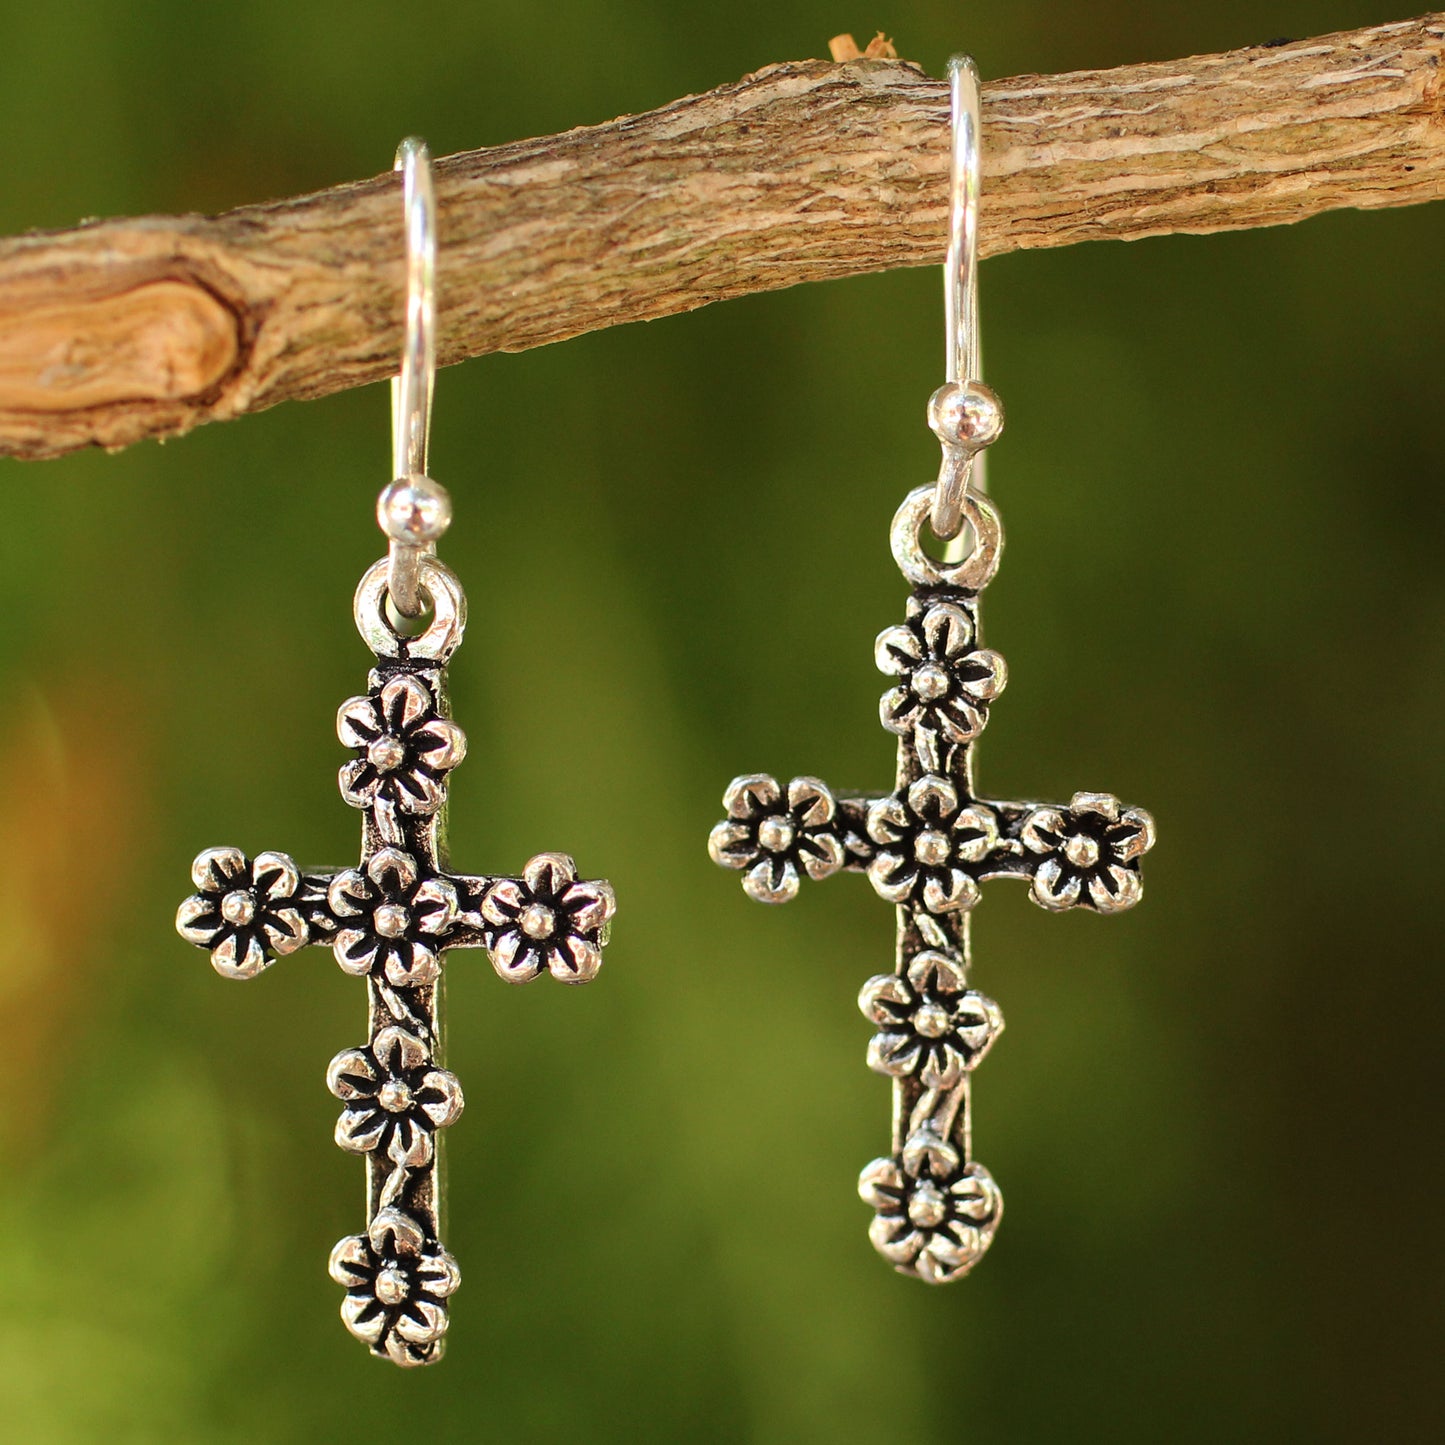 Blooms & Crosses Sterling Silver Earrings